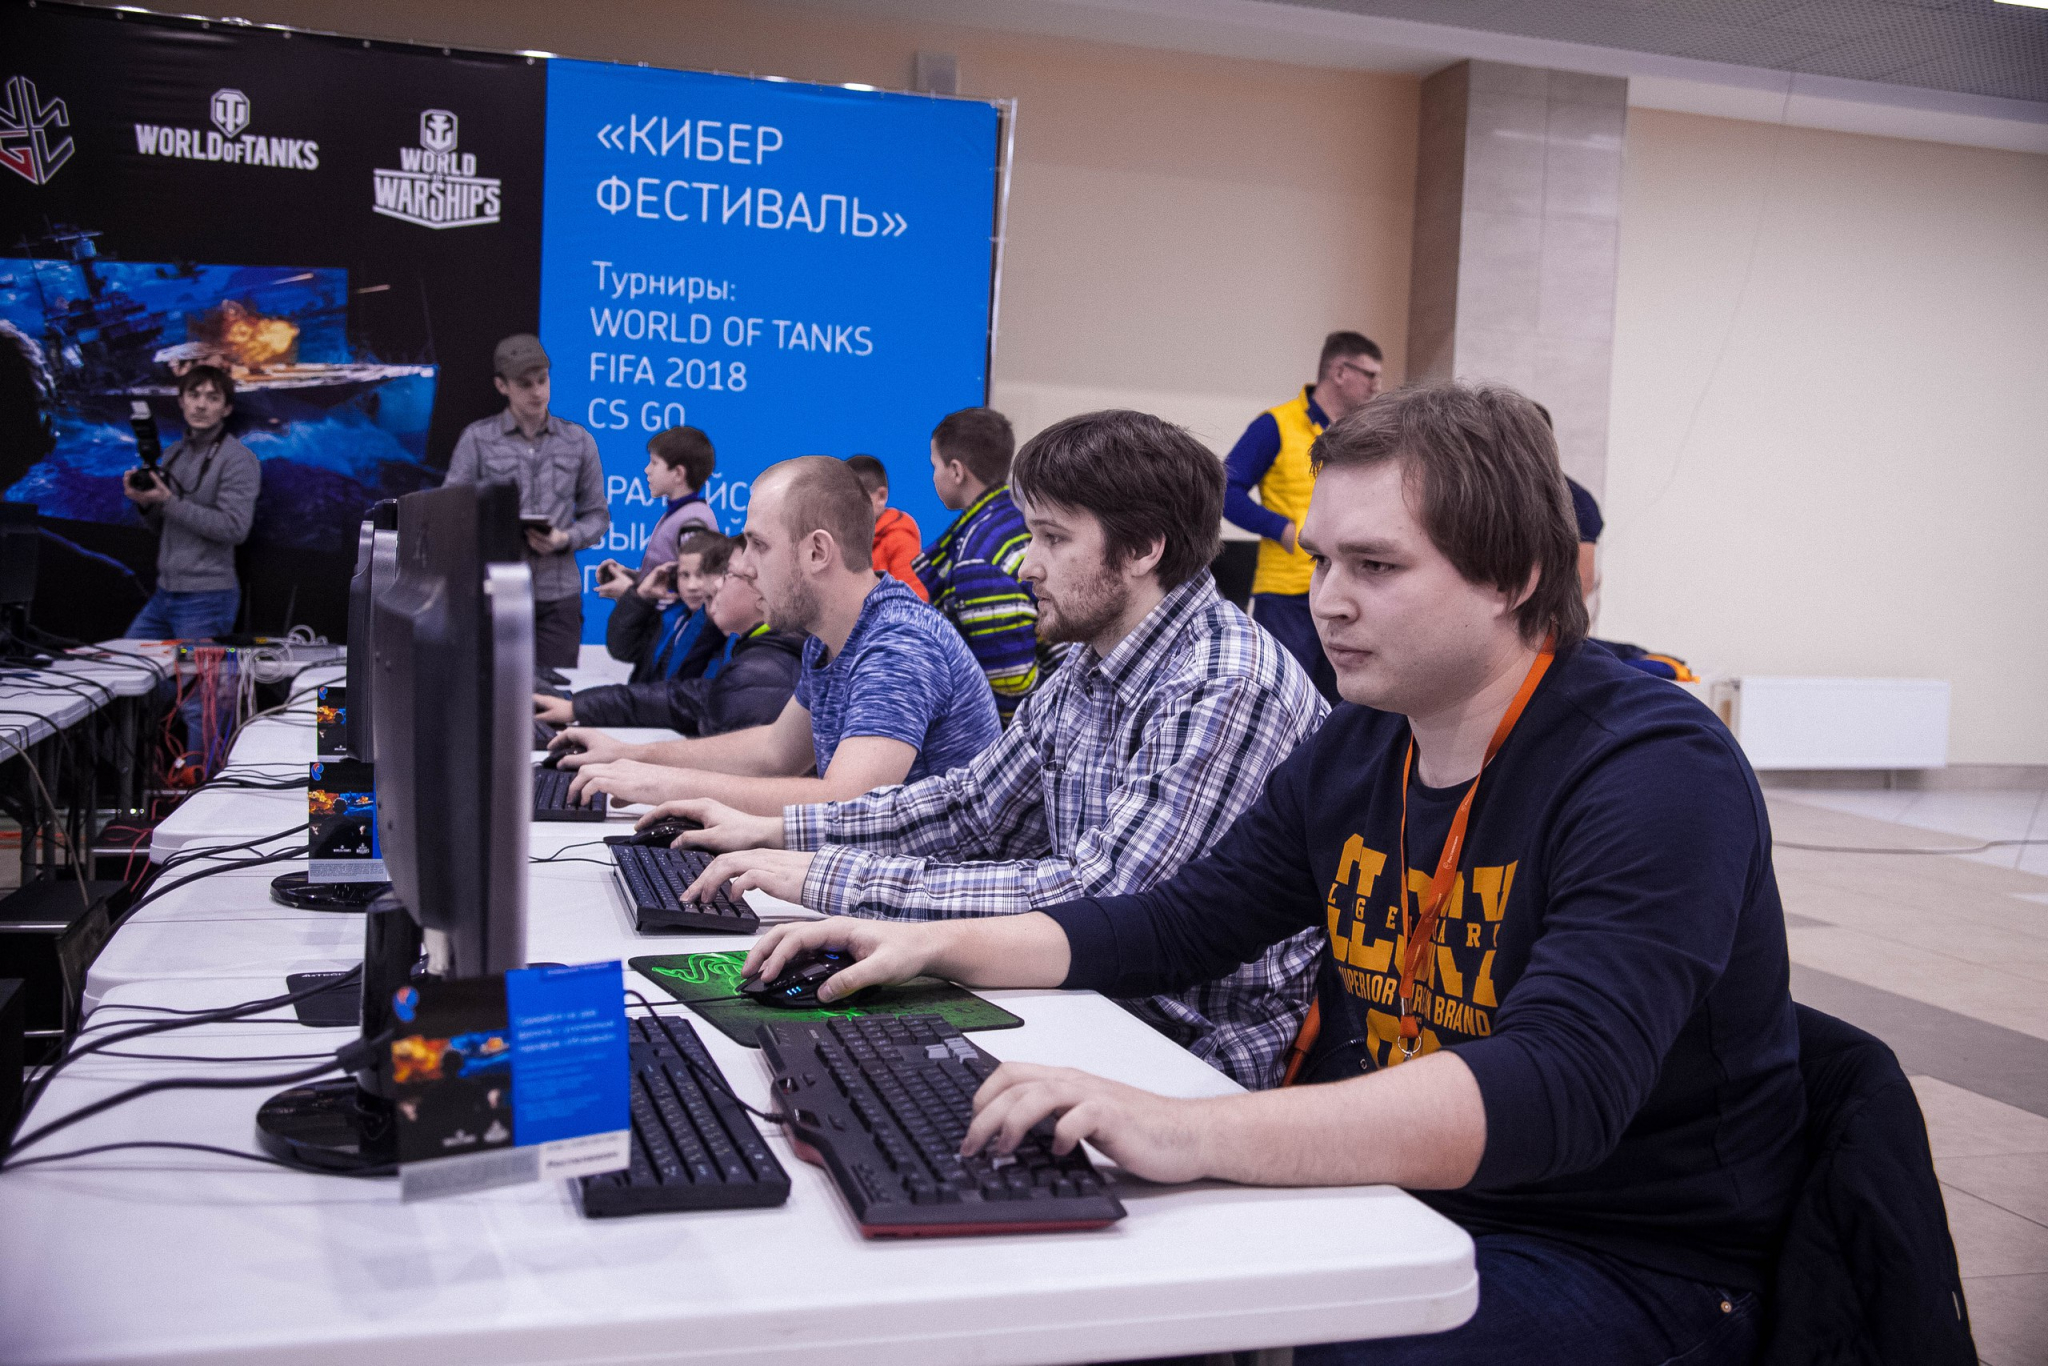 «Ростелеком» организовал киберфестиваль в Нижнем Новгороде